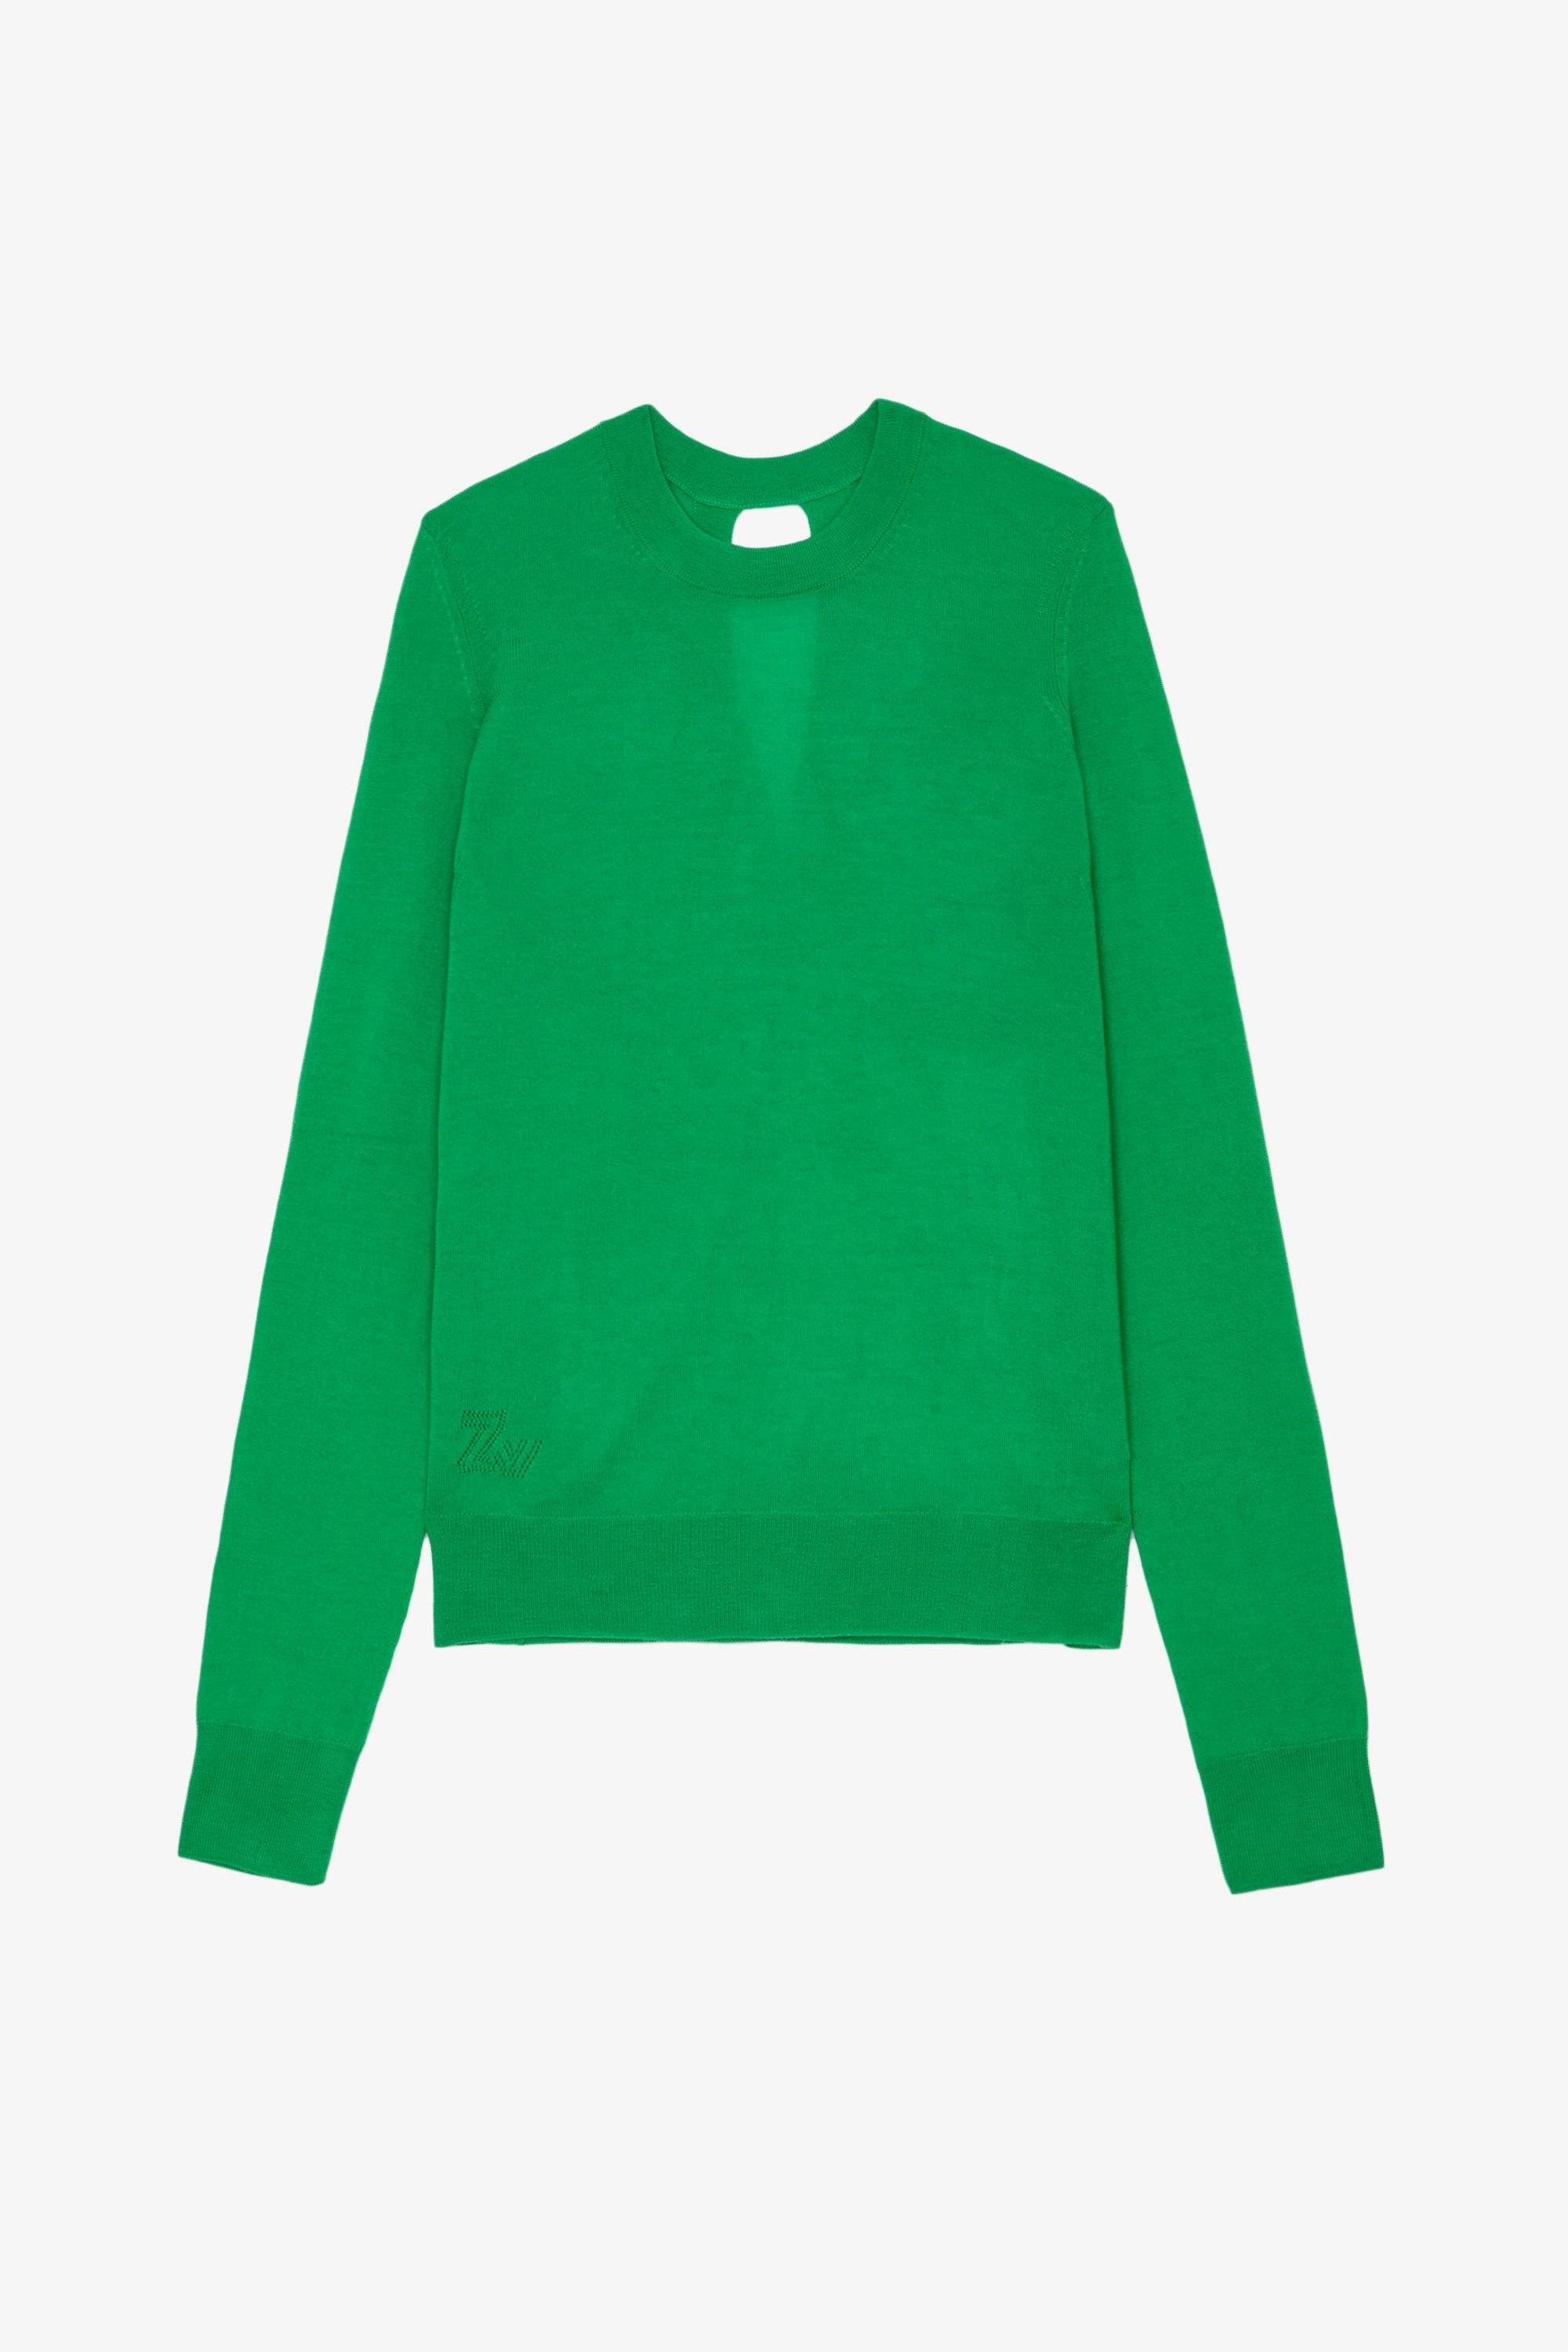 Jersey de lana merina Emma Jersey de punto de lana merina verde con cuello redondo y mangas largas con apertura en la espalda para mujer